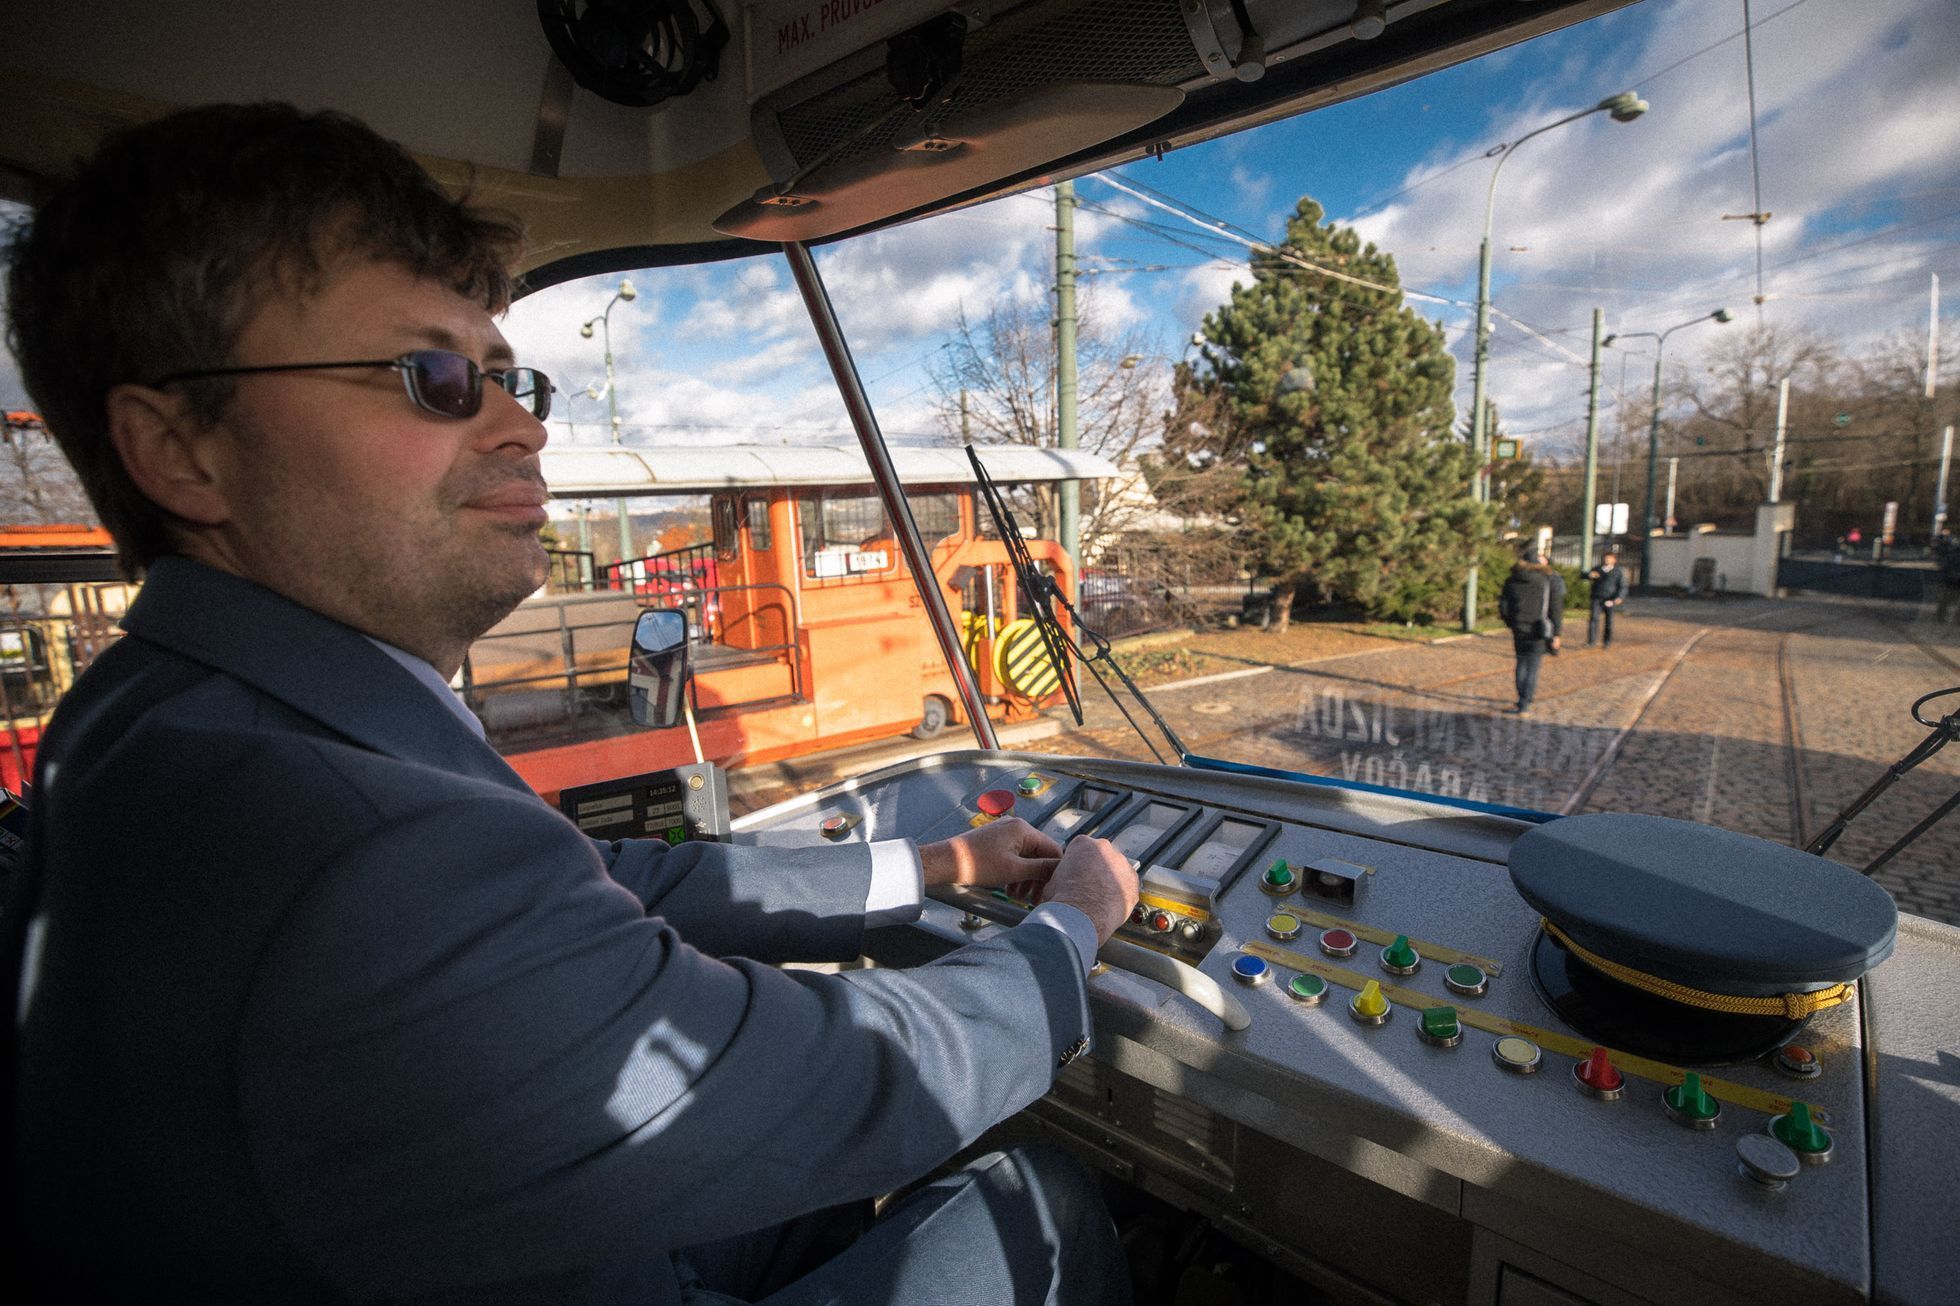 Slavnostní představení první tramvaje K2 (ev. č. 7000) v pravidelném provozu v Praze